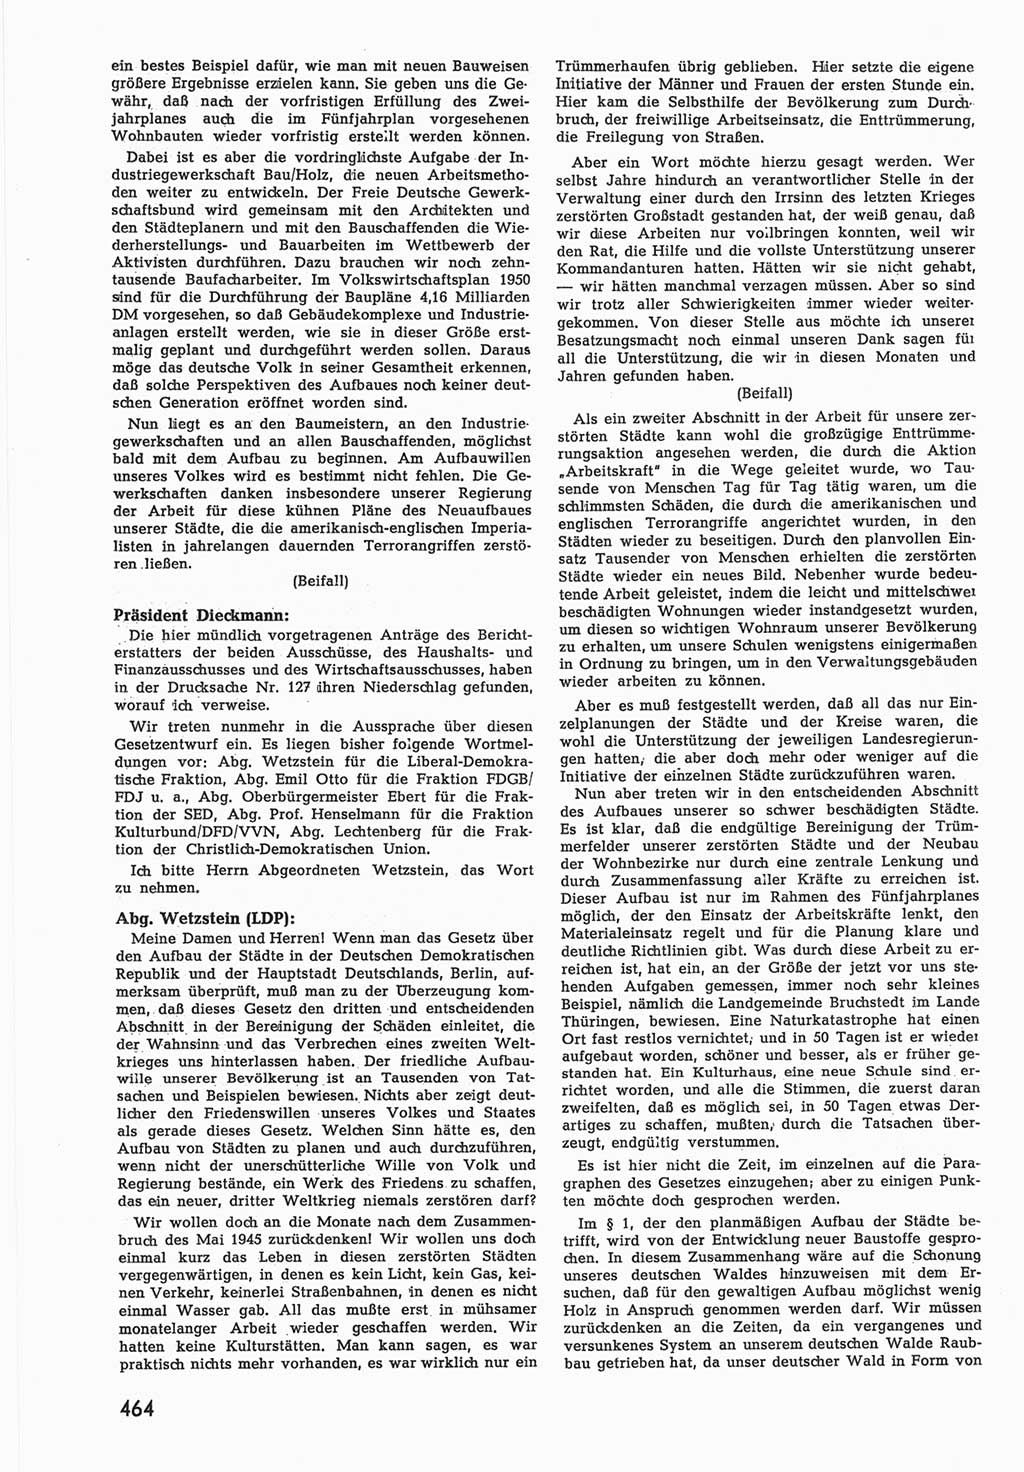 Provisorische Volkskammer (VK) der Deutschen Demokratischen Republik (DDR) 1949-1950, Dokument 482 (Prov. VK DDR 1949-1950, Dok. 482)